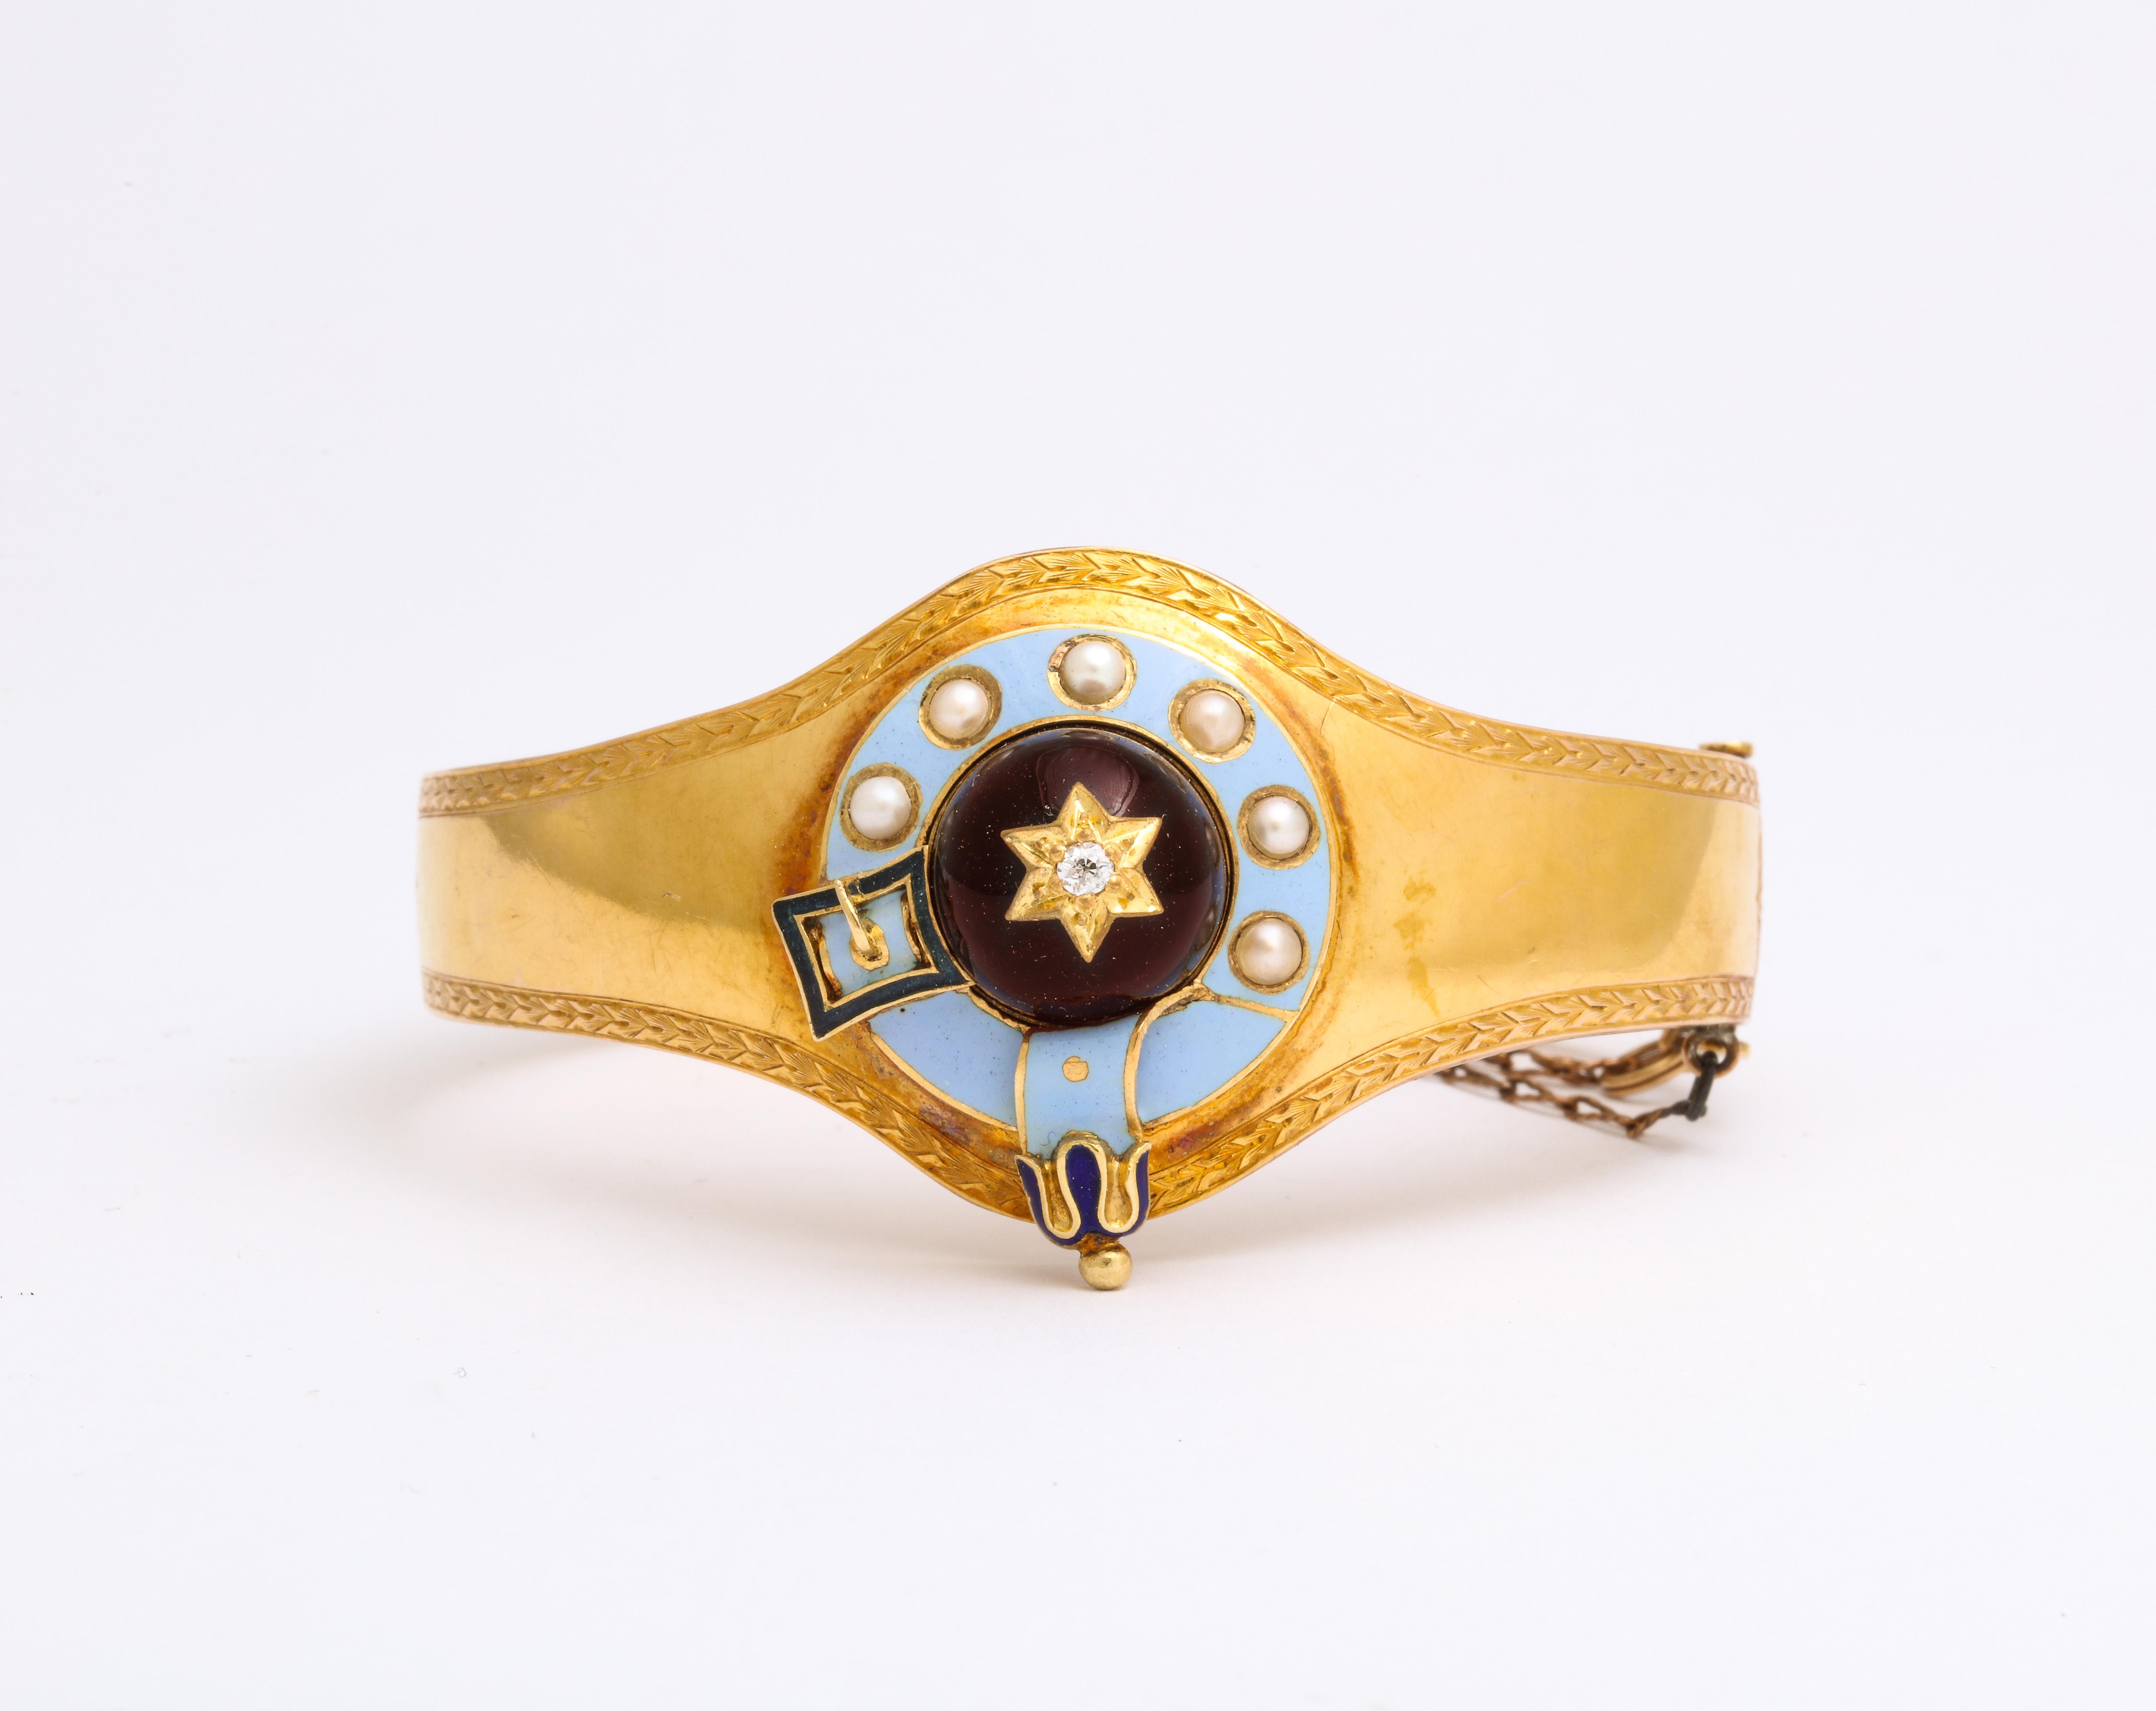 Un bracelet victorien en or 15 Kt présente au centre un grand grenat cabochon en forme de dôme, serti d'une étoile en or et d'un petit diamant. Une bordure d'émail bleu clair entoure le grenat et celui-ci est serti de perles naturelles. Une boucle